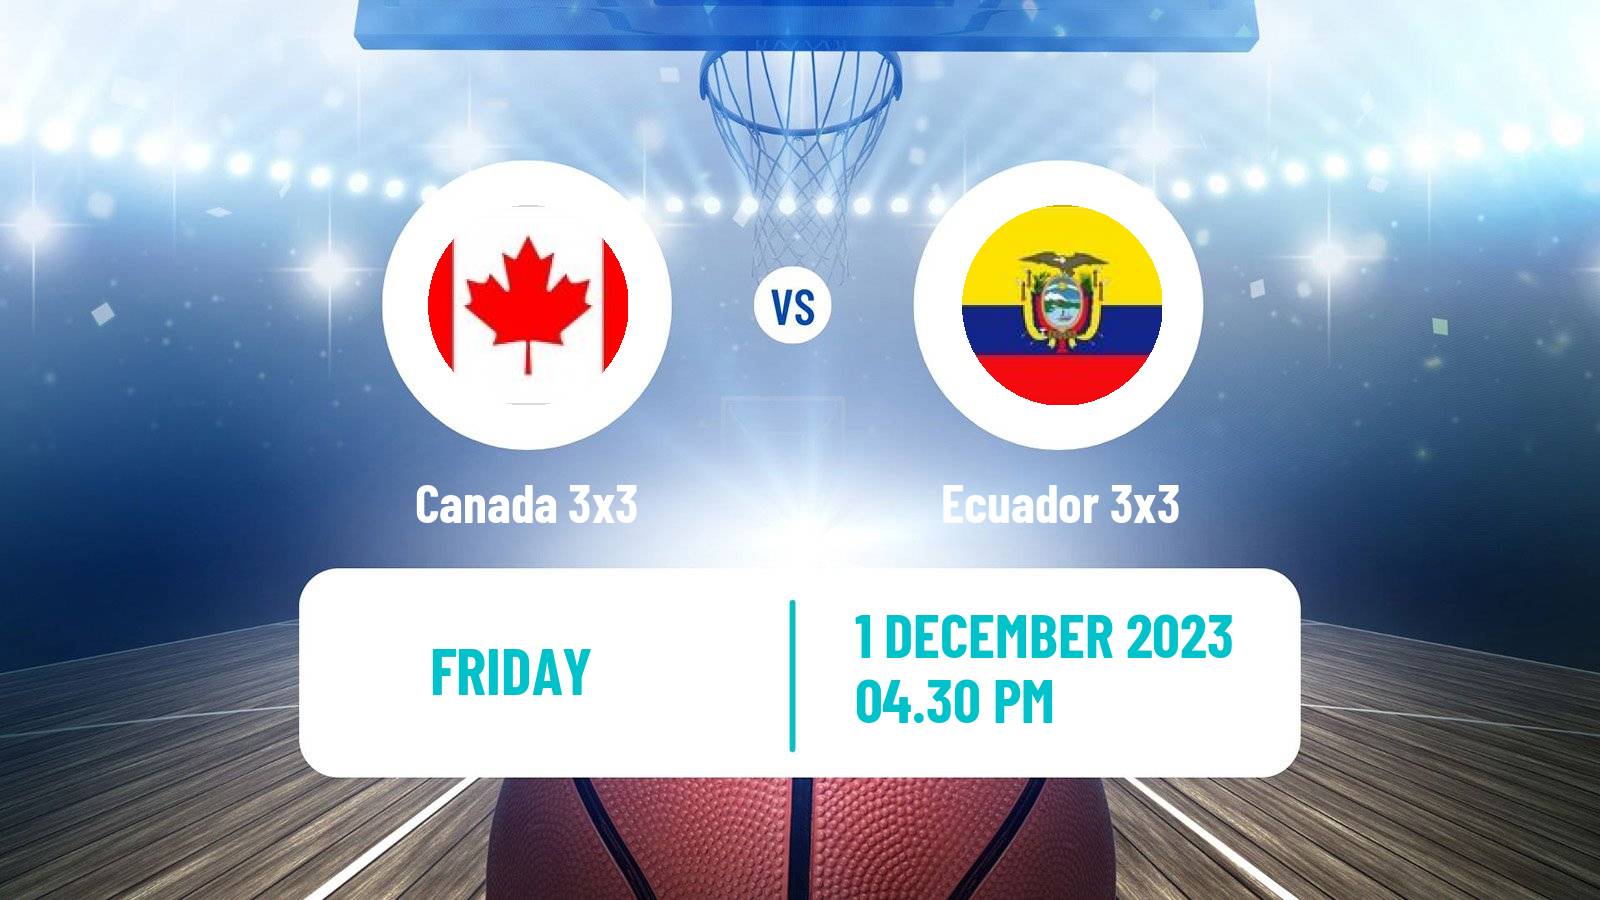 Basketball Americup 3x3 Canada 3x3 - Ecuador 3x3